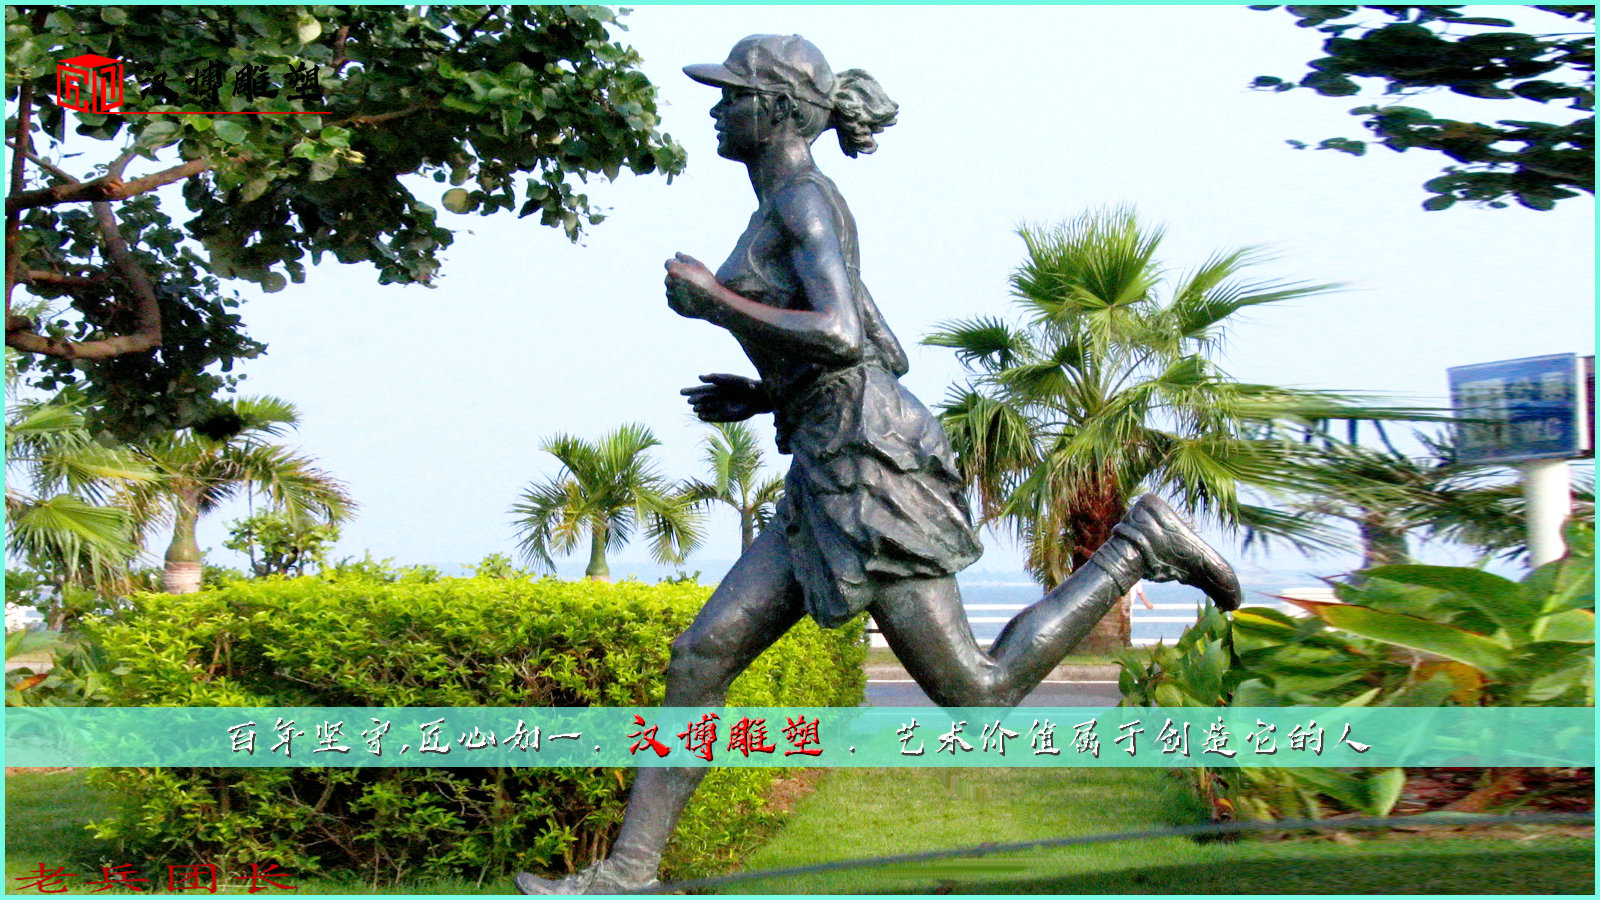  跑步雕像,校园景观雕塑,运动人物铜雕